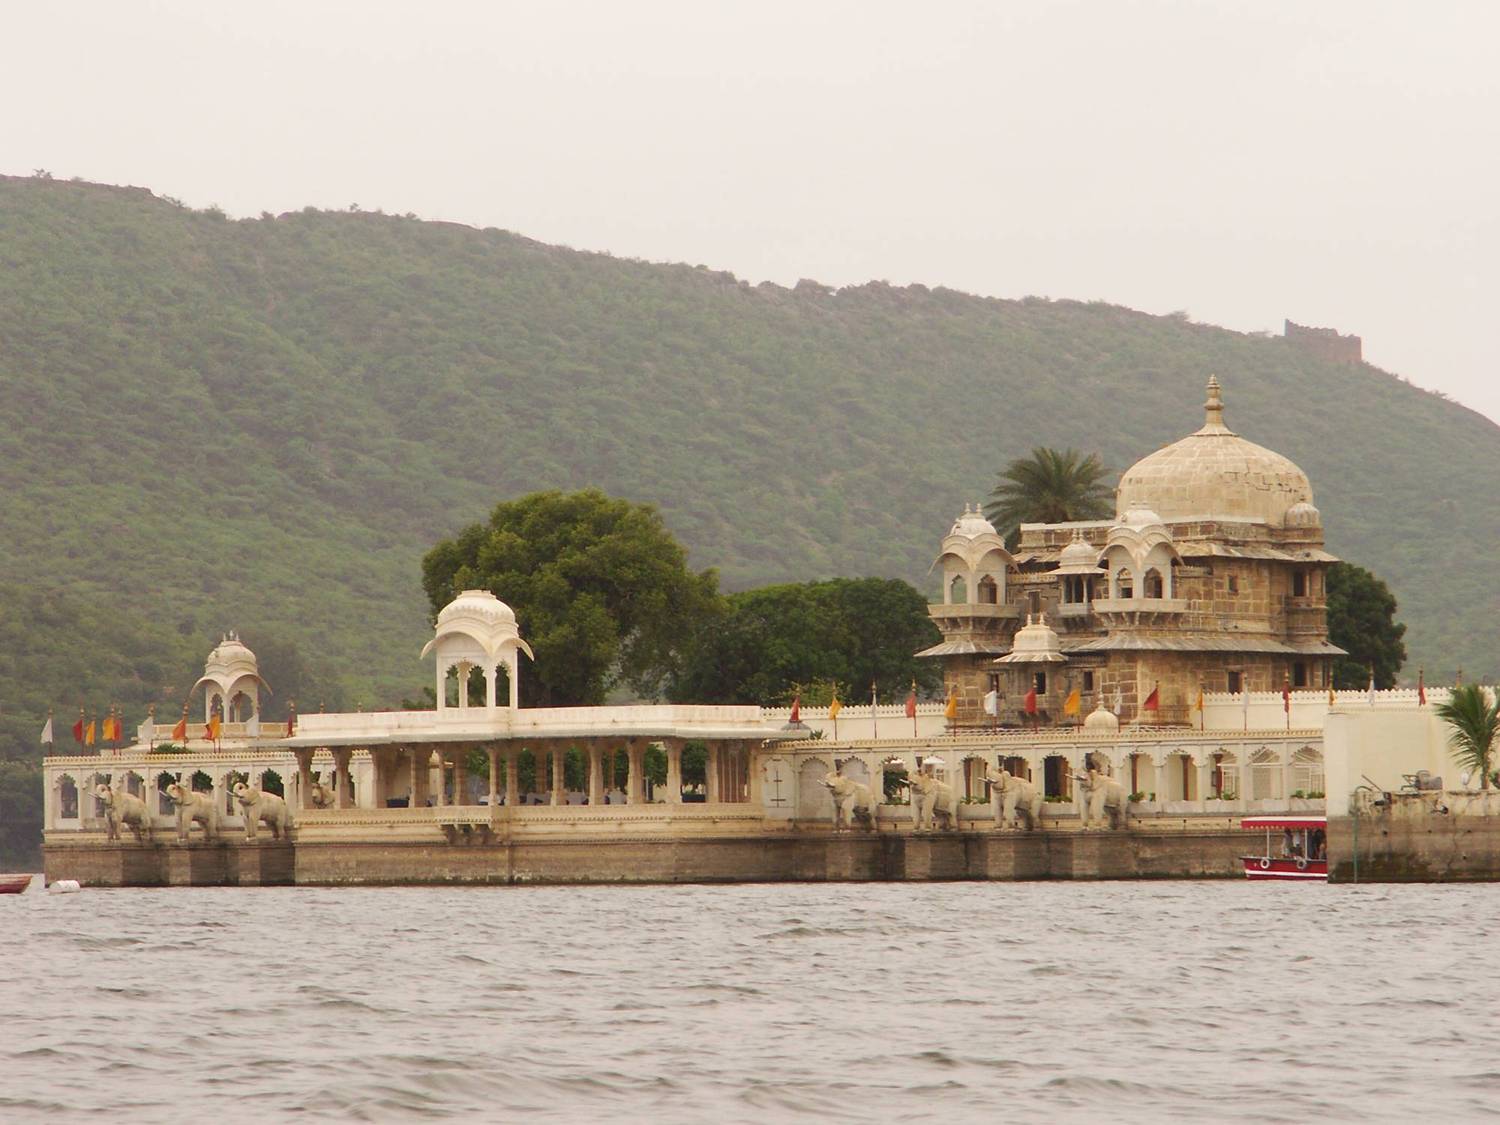 Jag Mandir Palace - Wikipedia